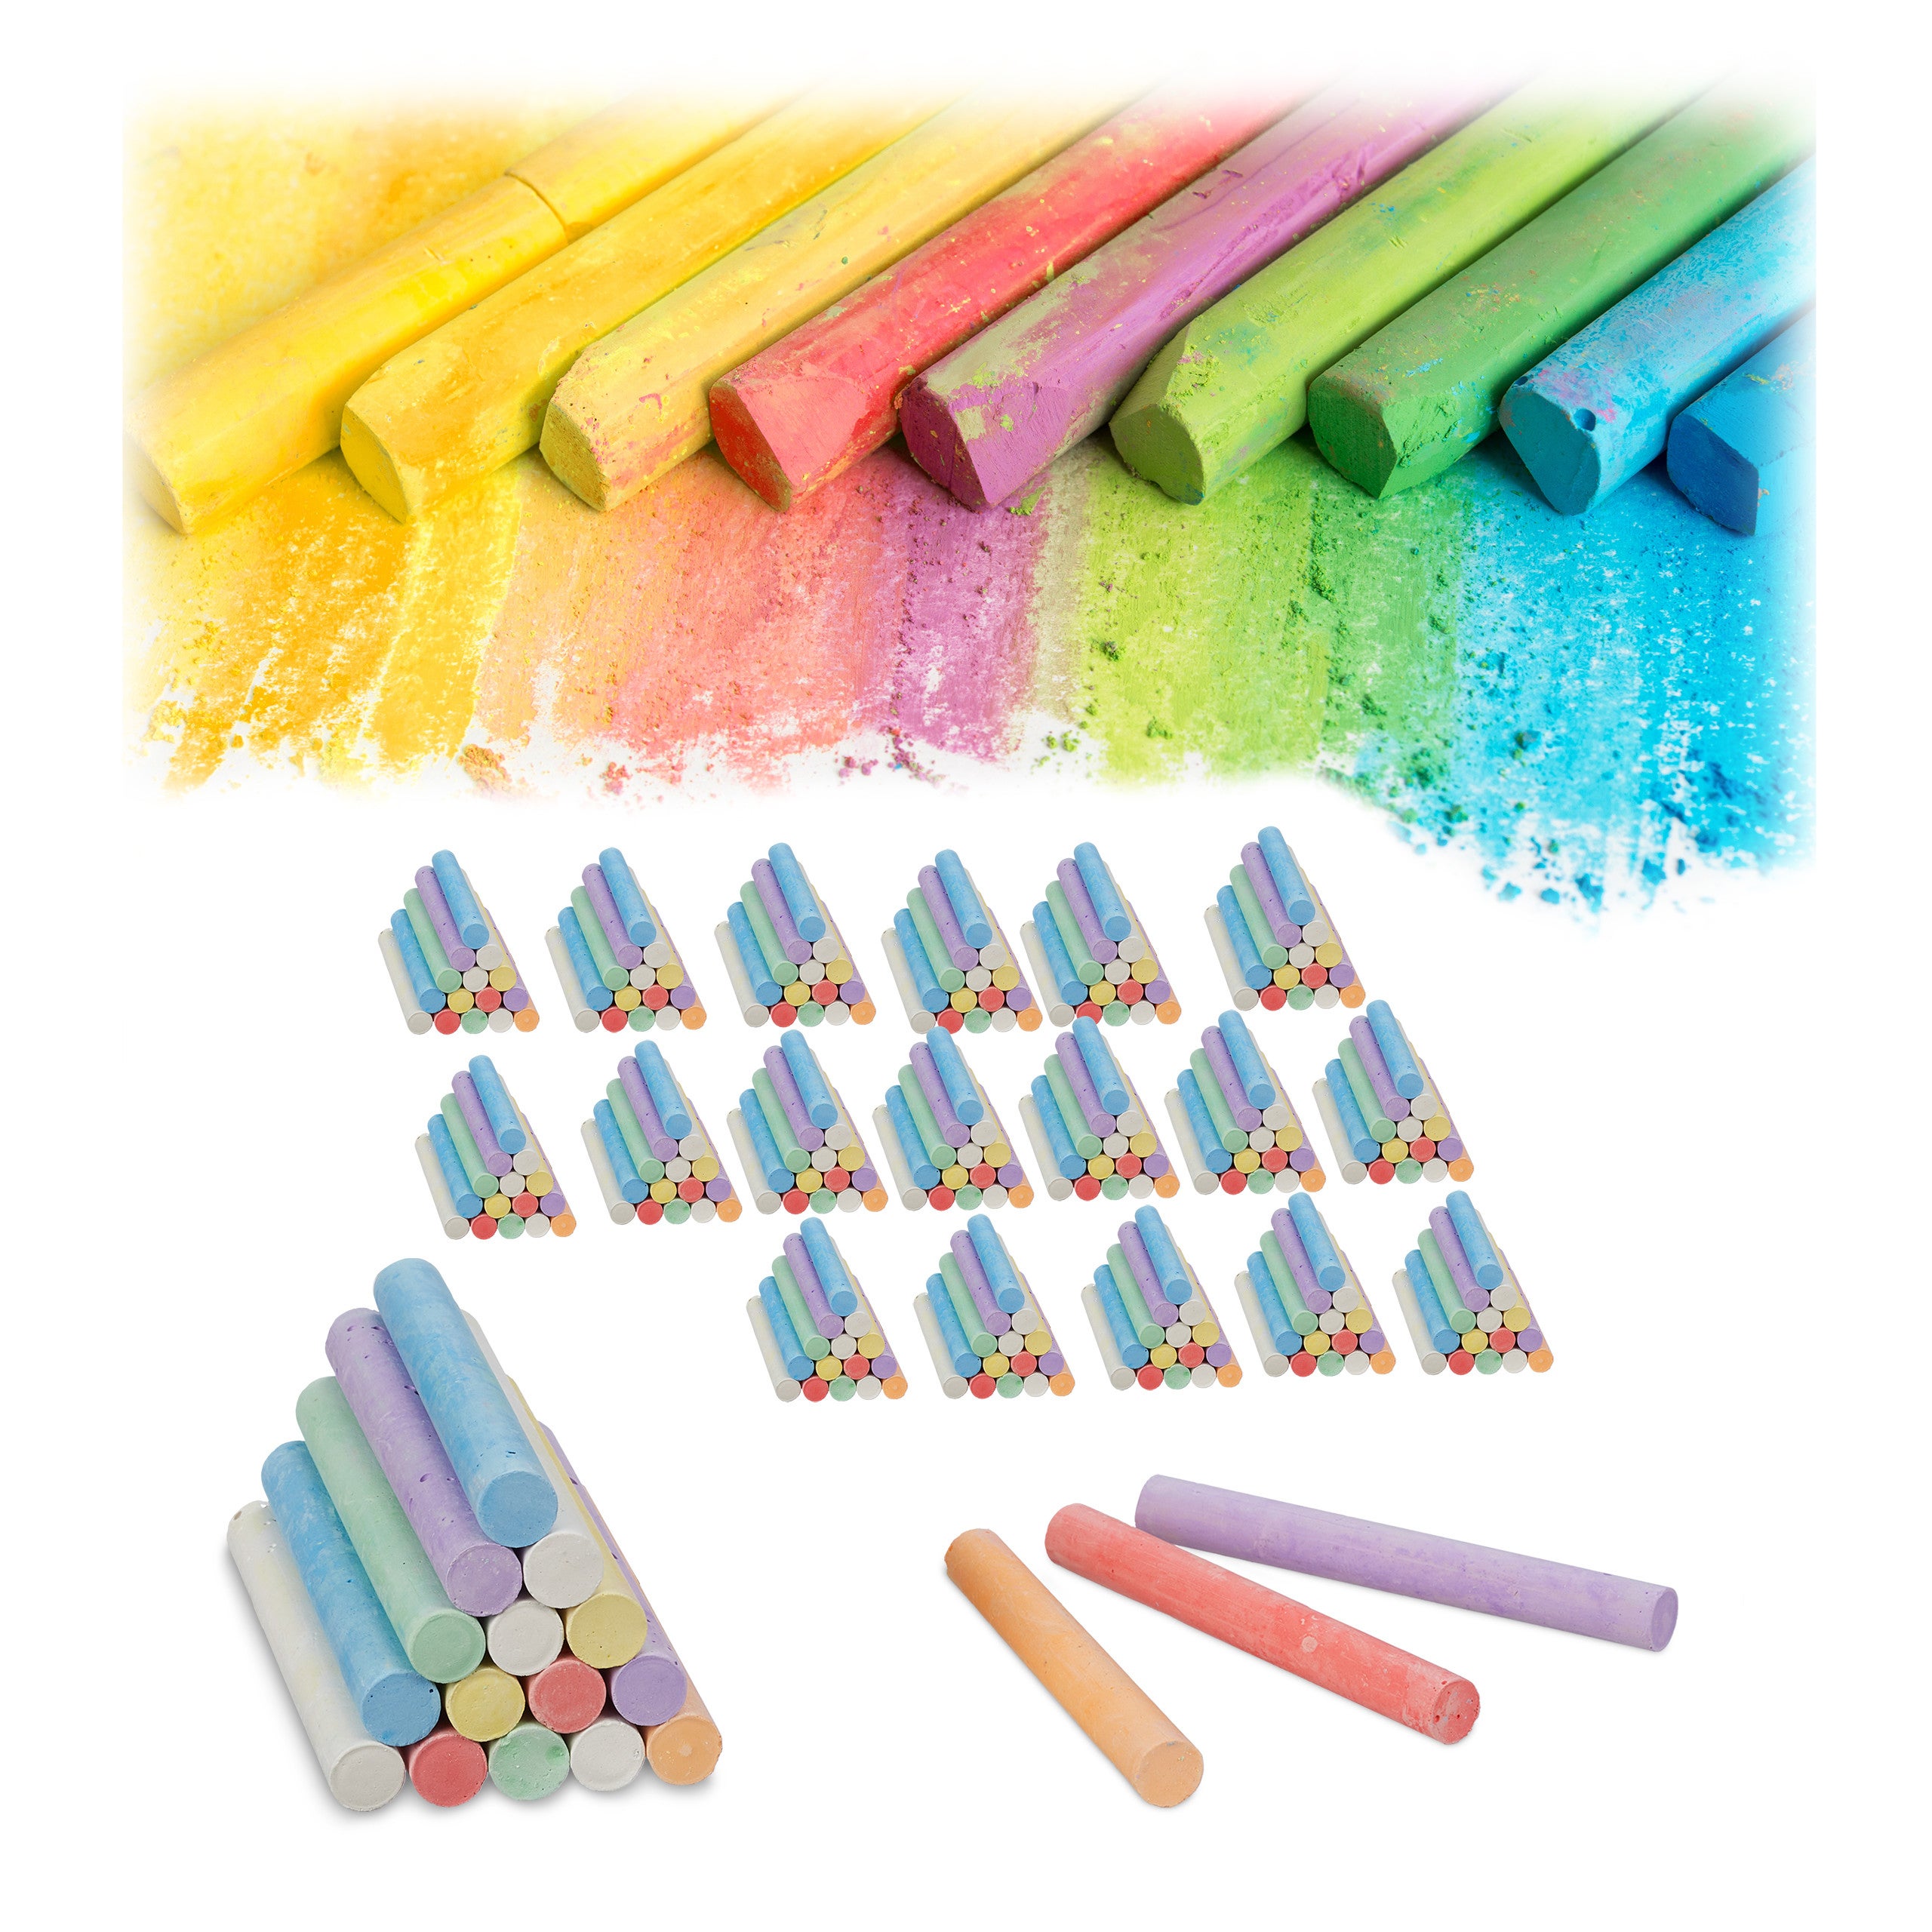 Relaxdays Confezione da 1200 gessetti per lavagna e strada, in 6 colori,  per bambini e insegnanti, rotondi, Ø 9 mm, colorati